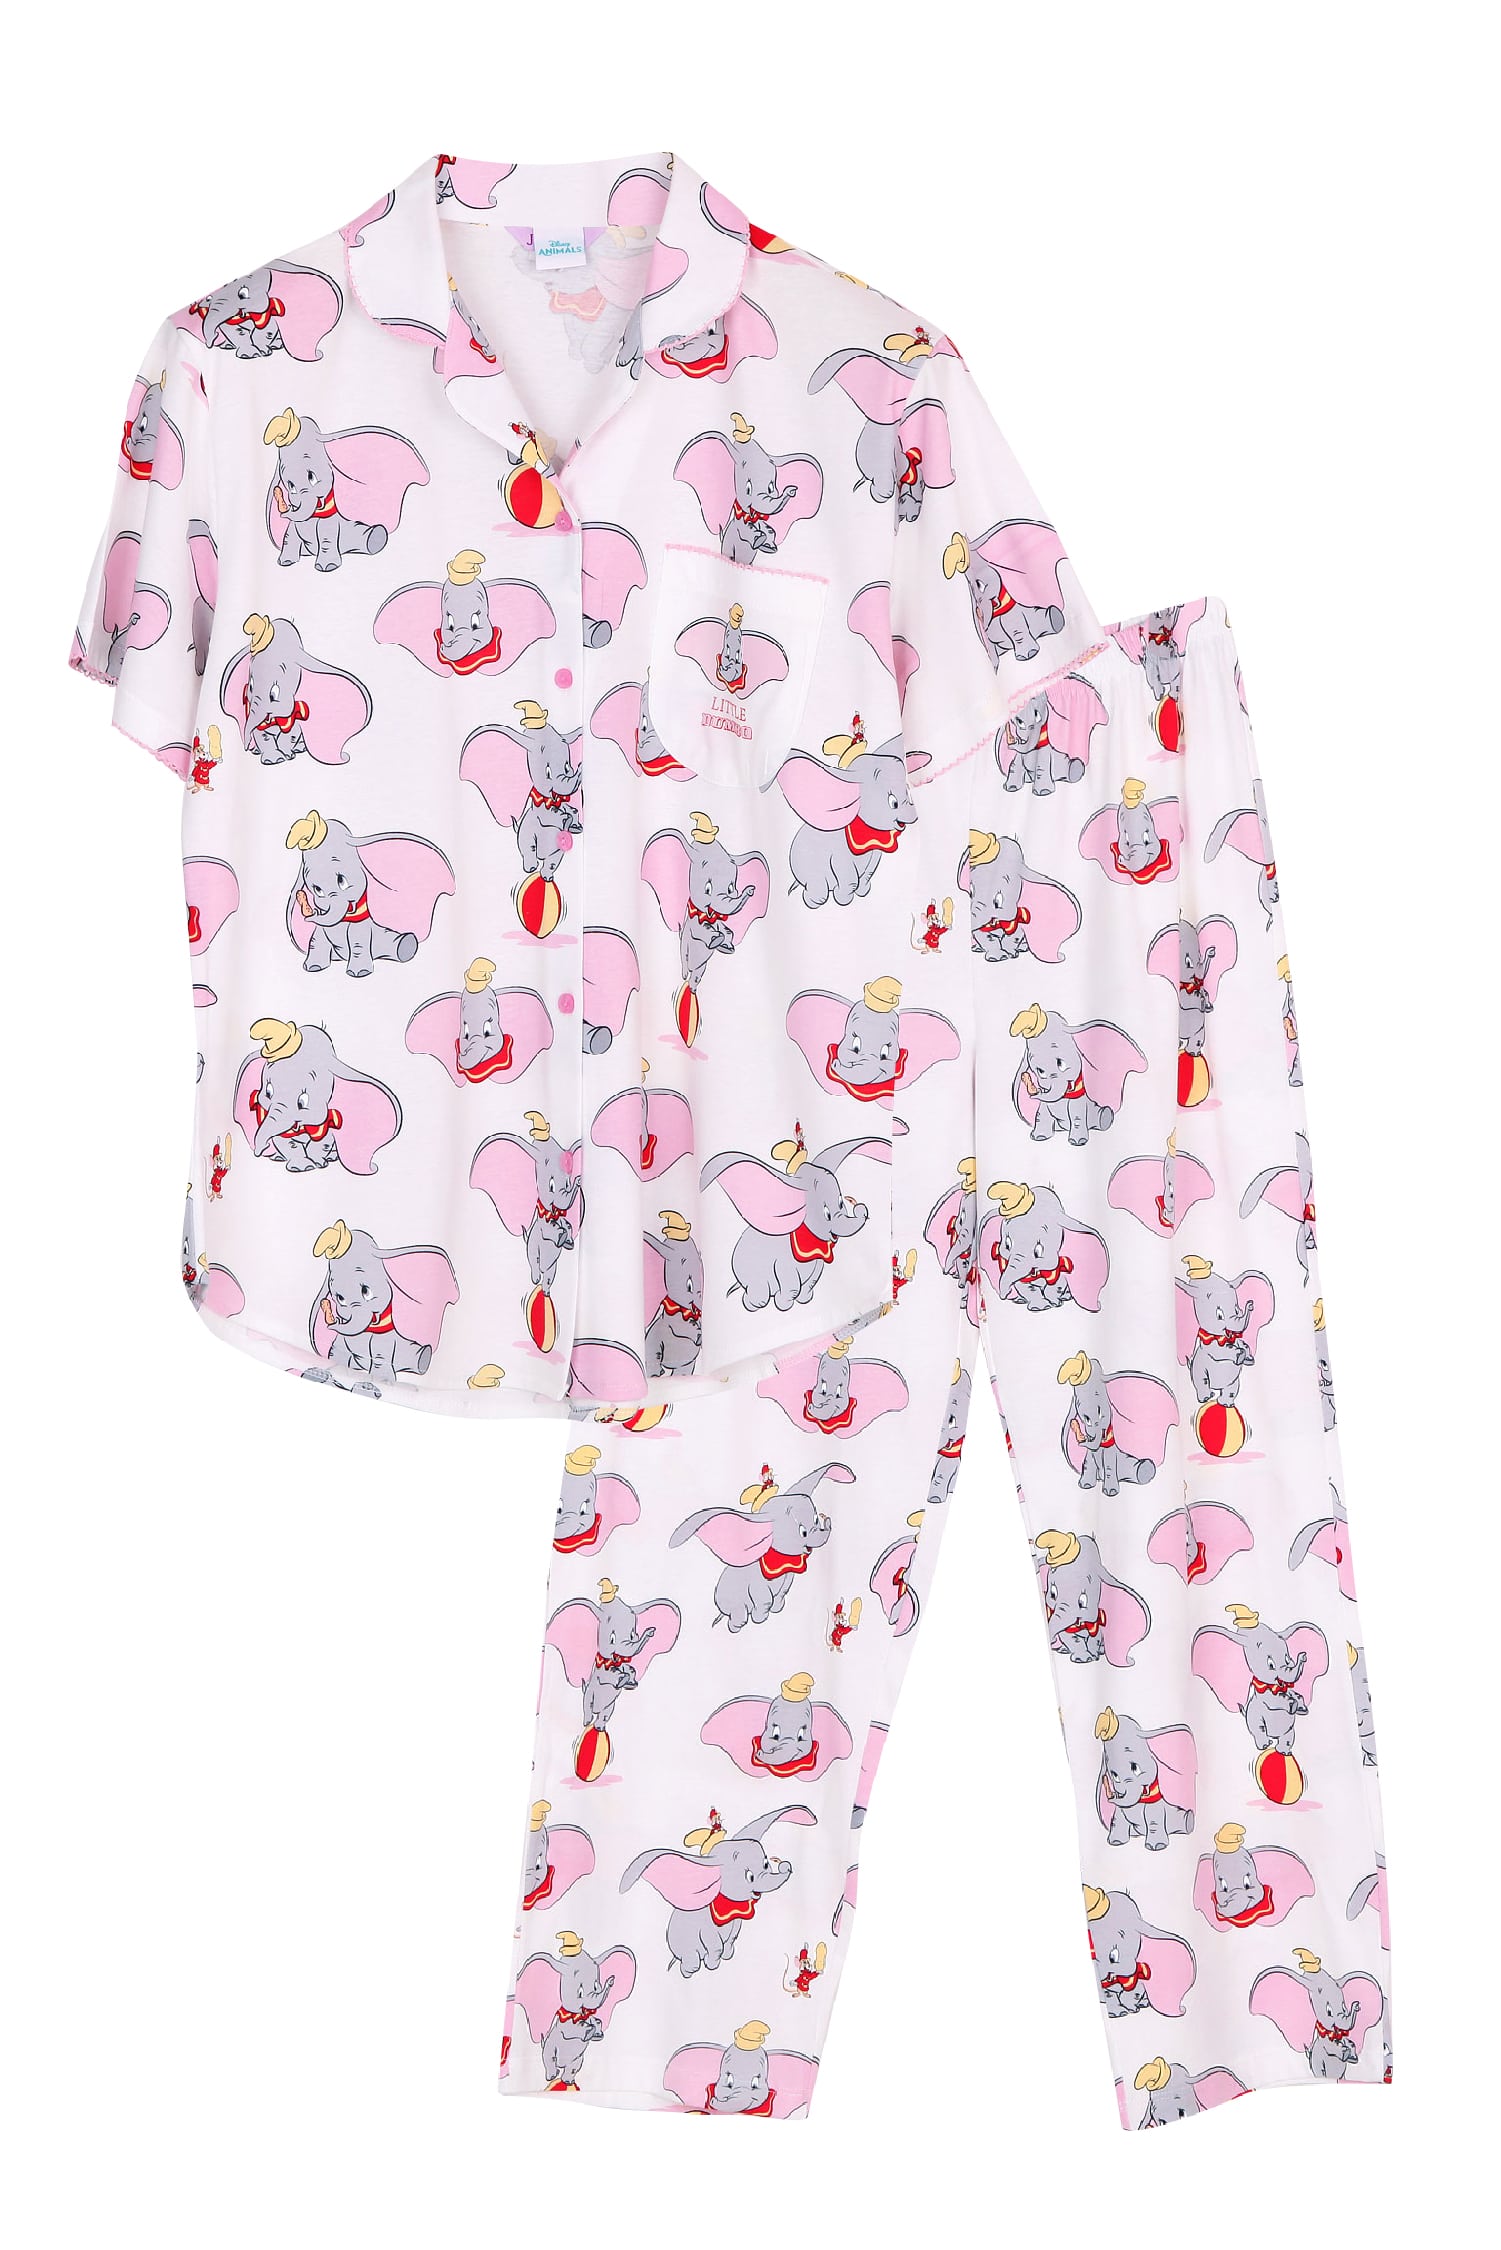 ชุดนอนผู้หญิง JOSILINS เซตเสื้อแขนสั้น และกางเกงขายาว Disney Animals : The Little Dumbo สีครีม